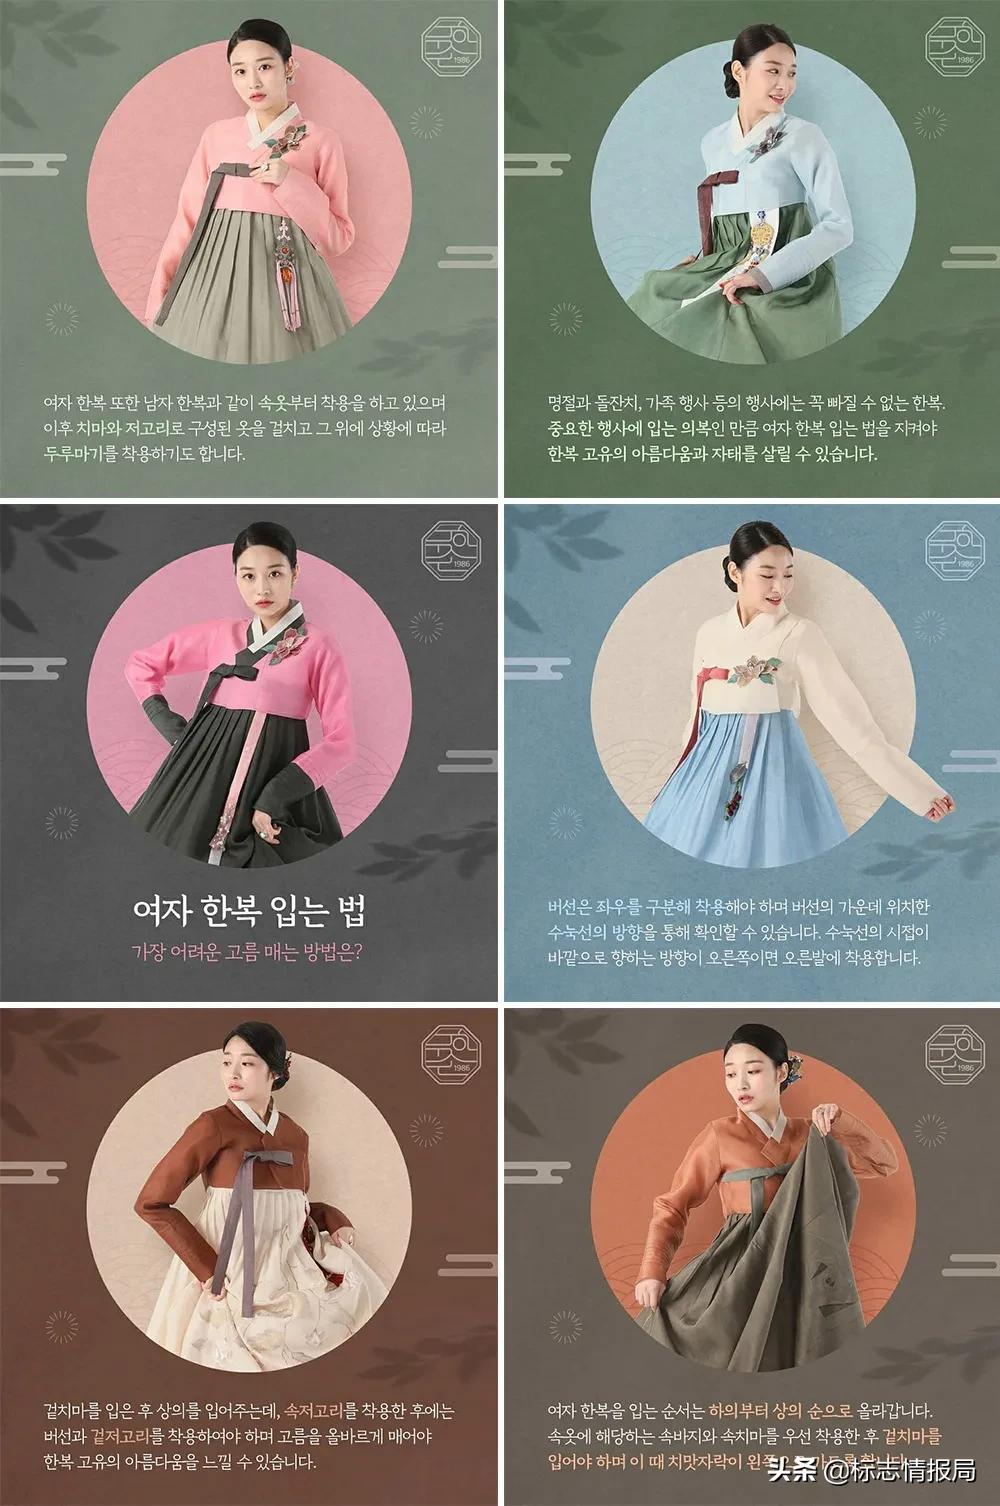 韩服服装品牌 MooHanSon 启用新LOGO